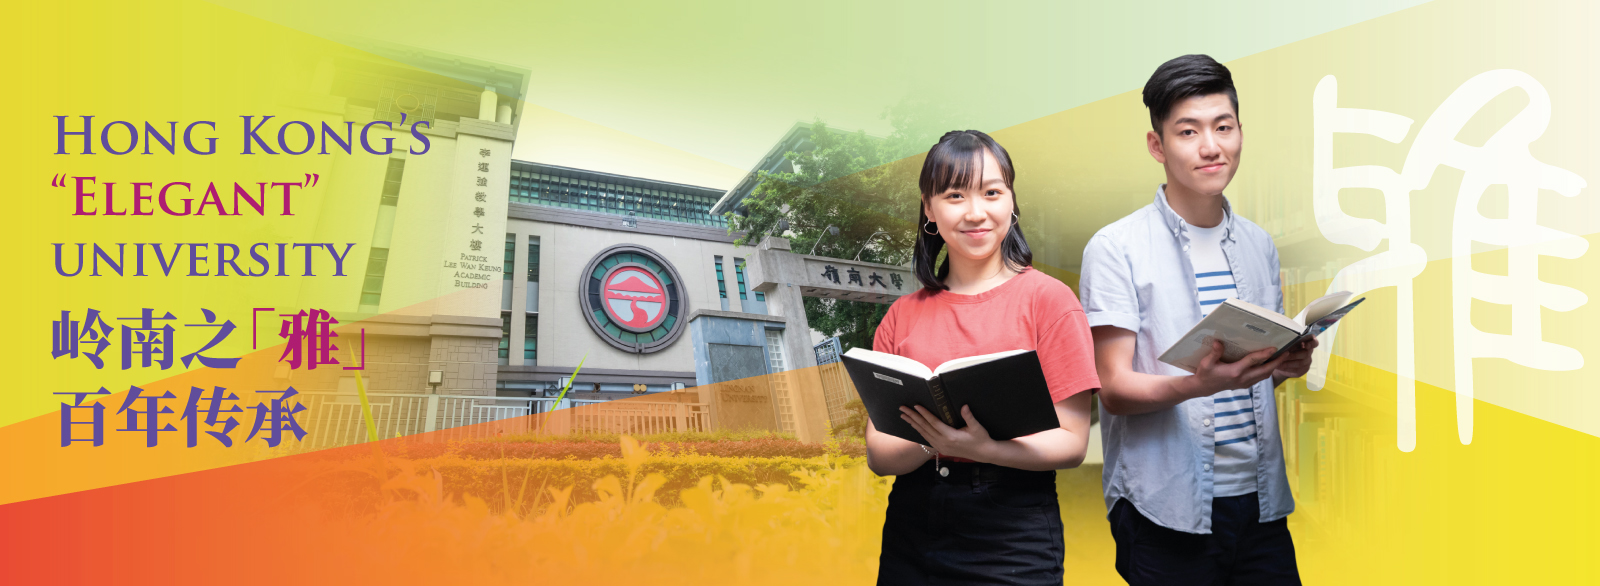 Hong Kong’s “elegant” university - 岭南之「雅」 百年传承